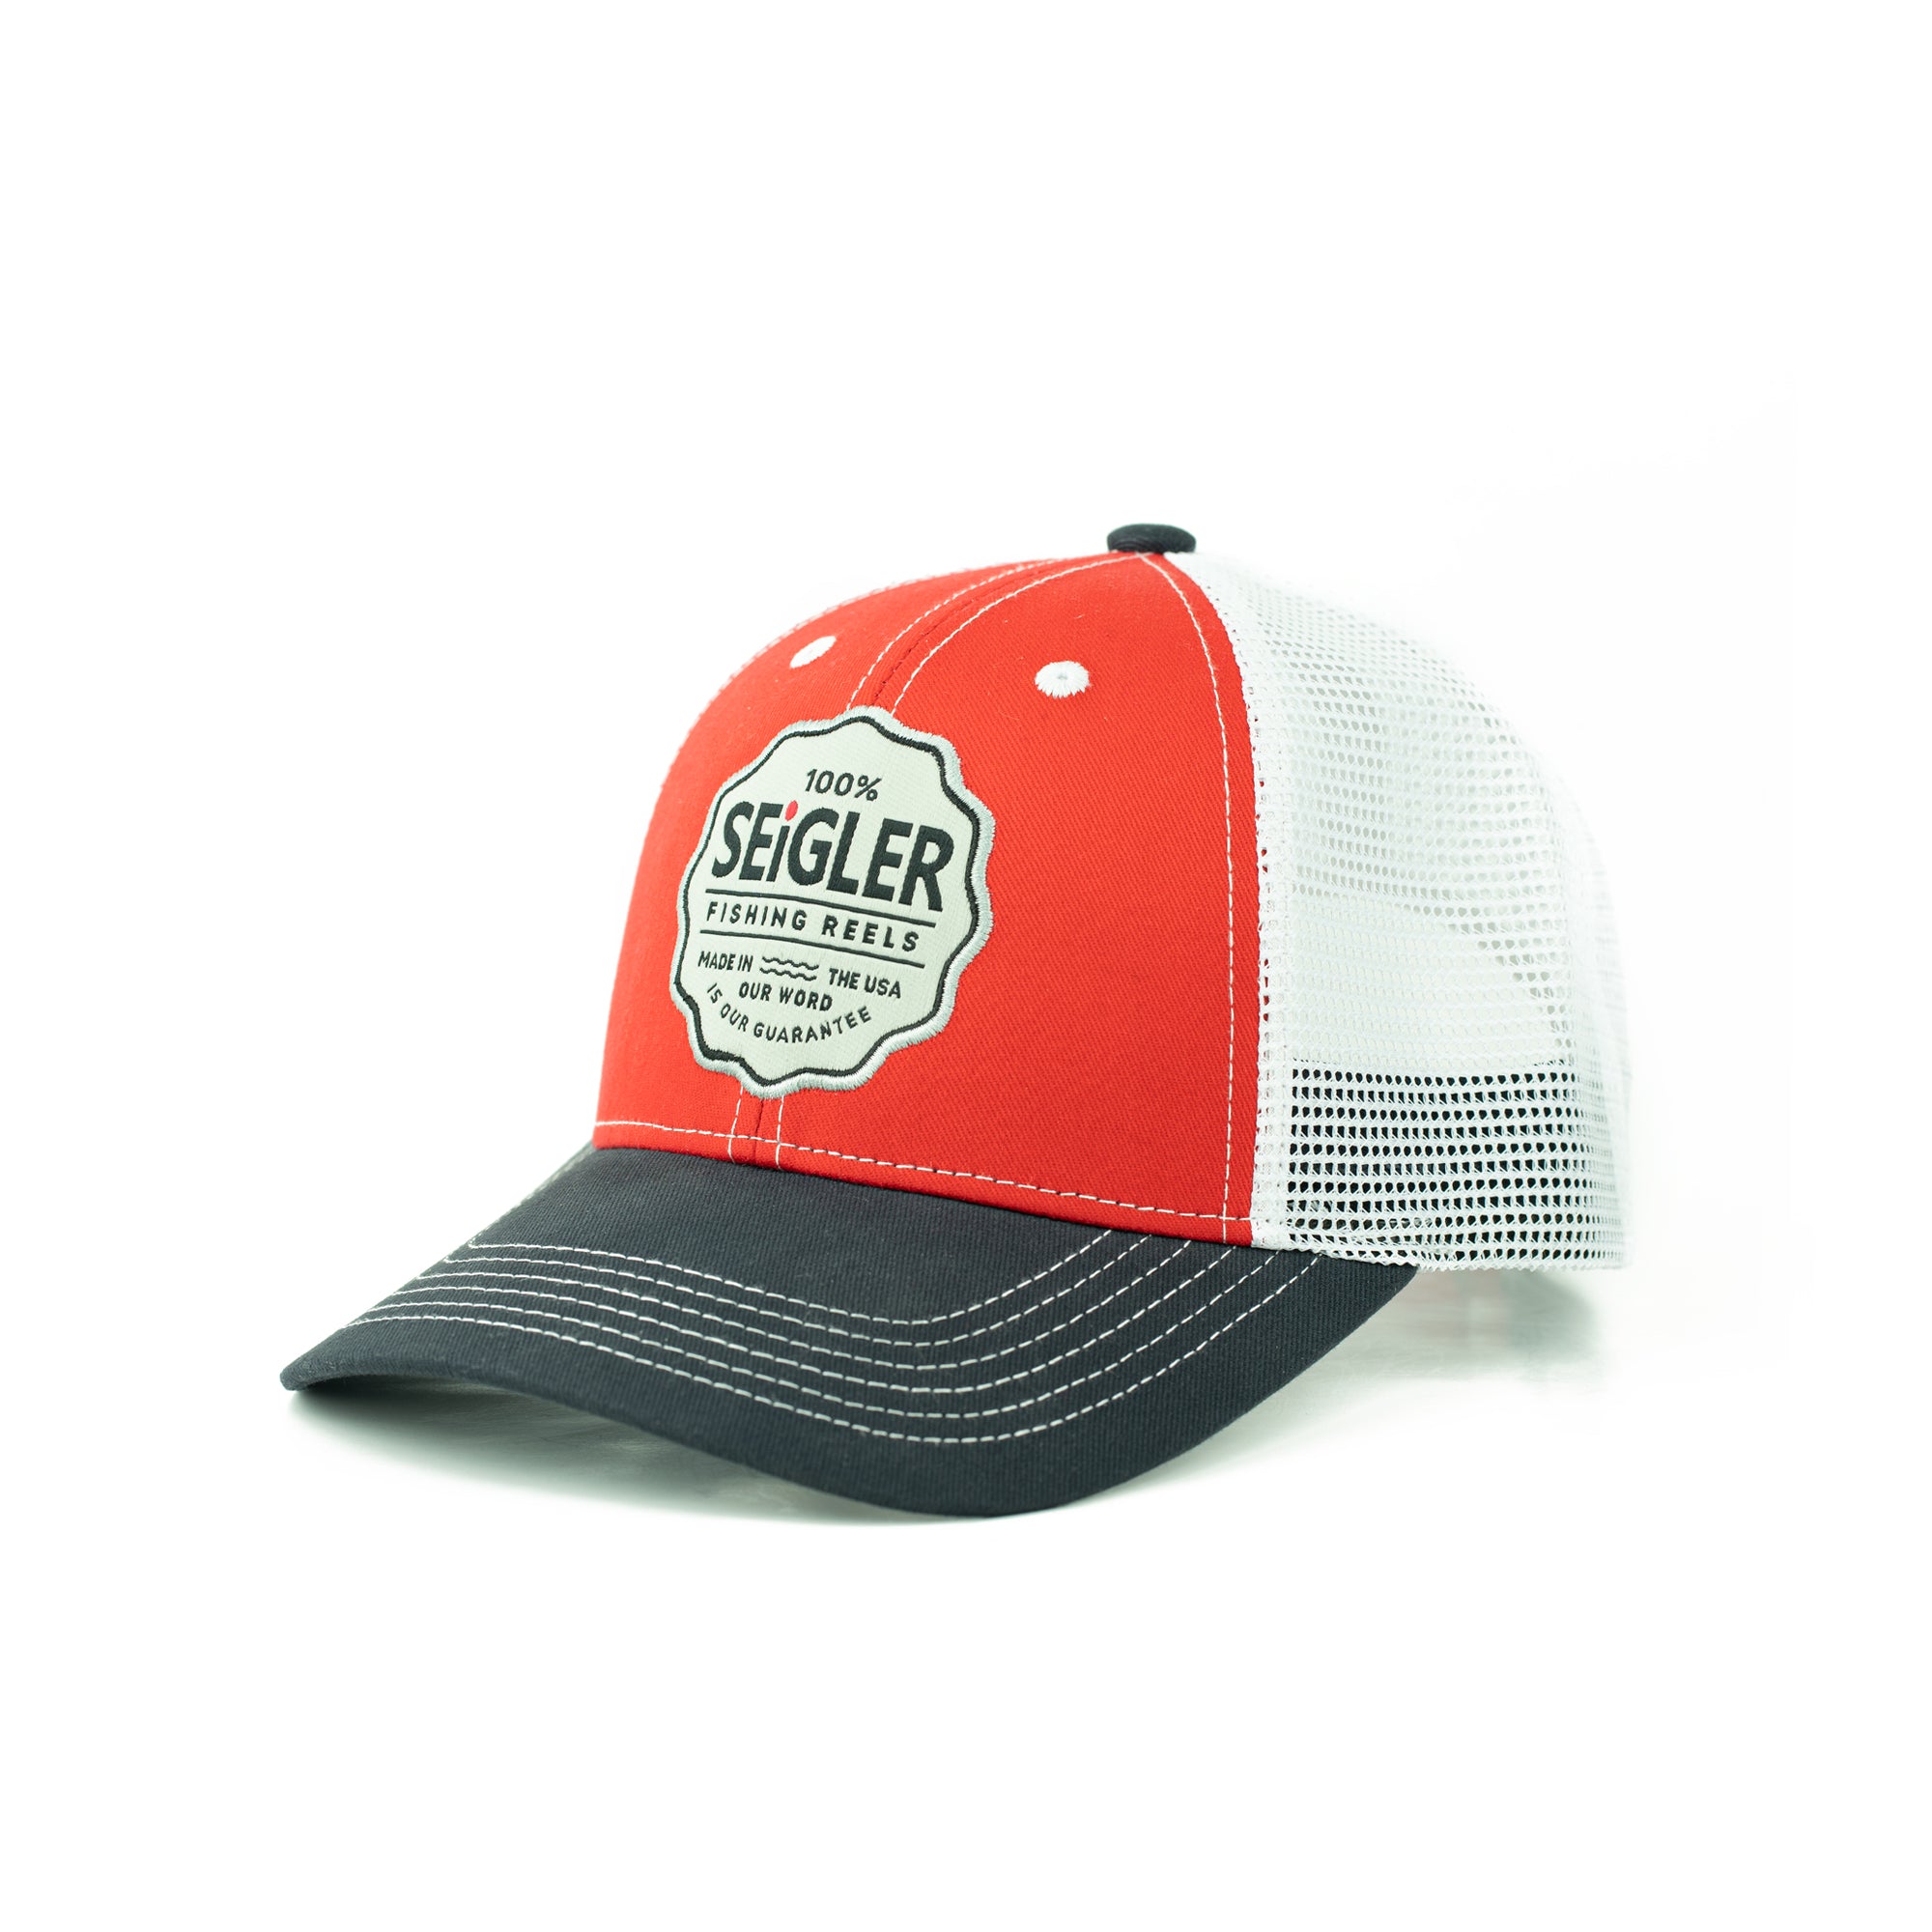 Surf Fishing Trucker Hat – Rad Apparel